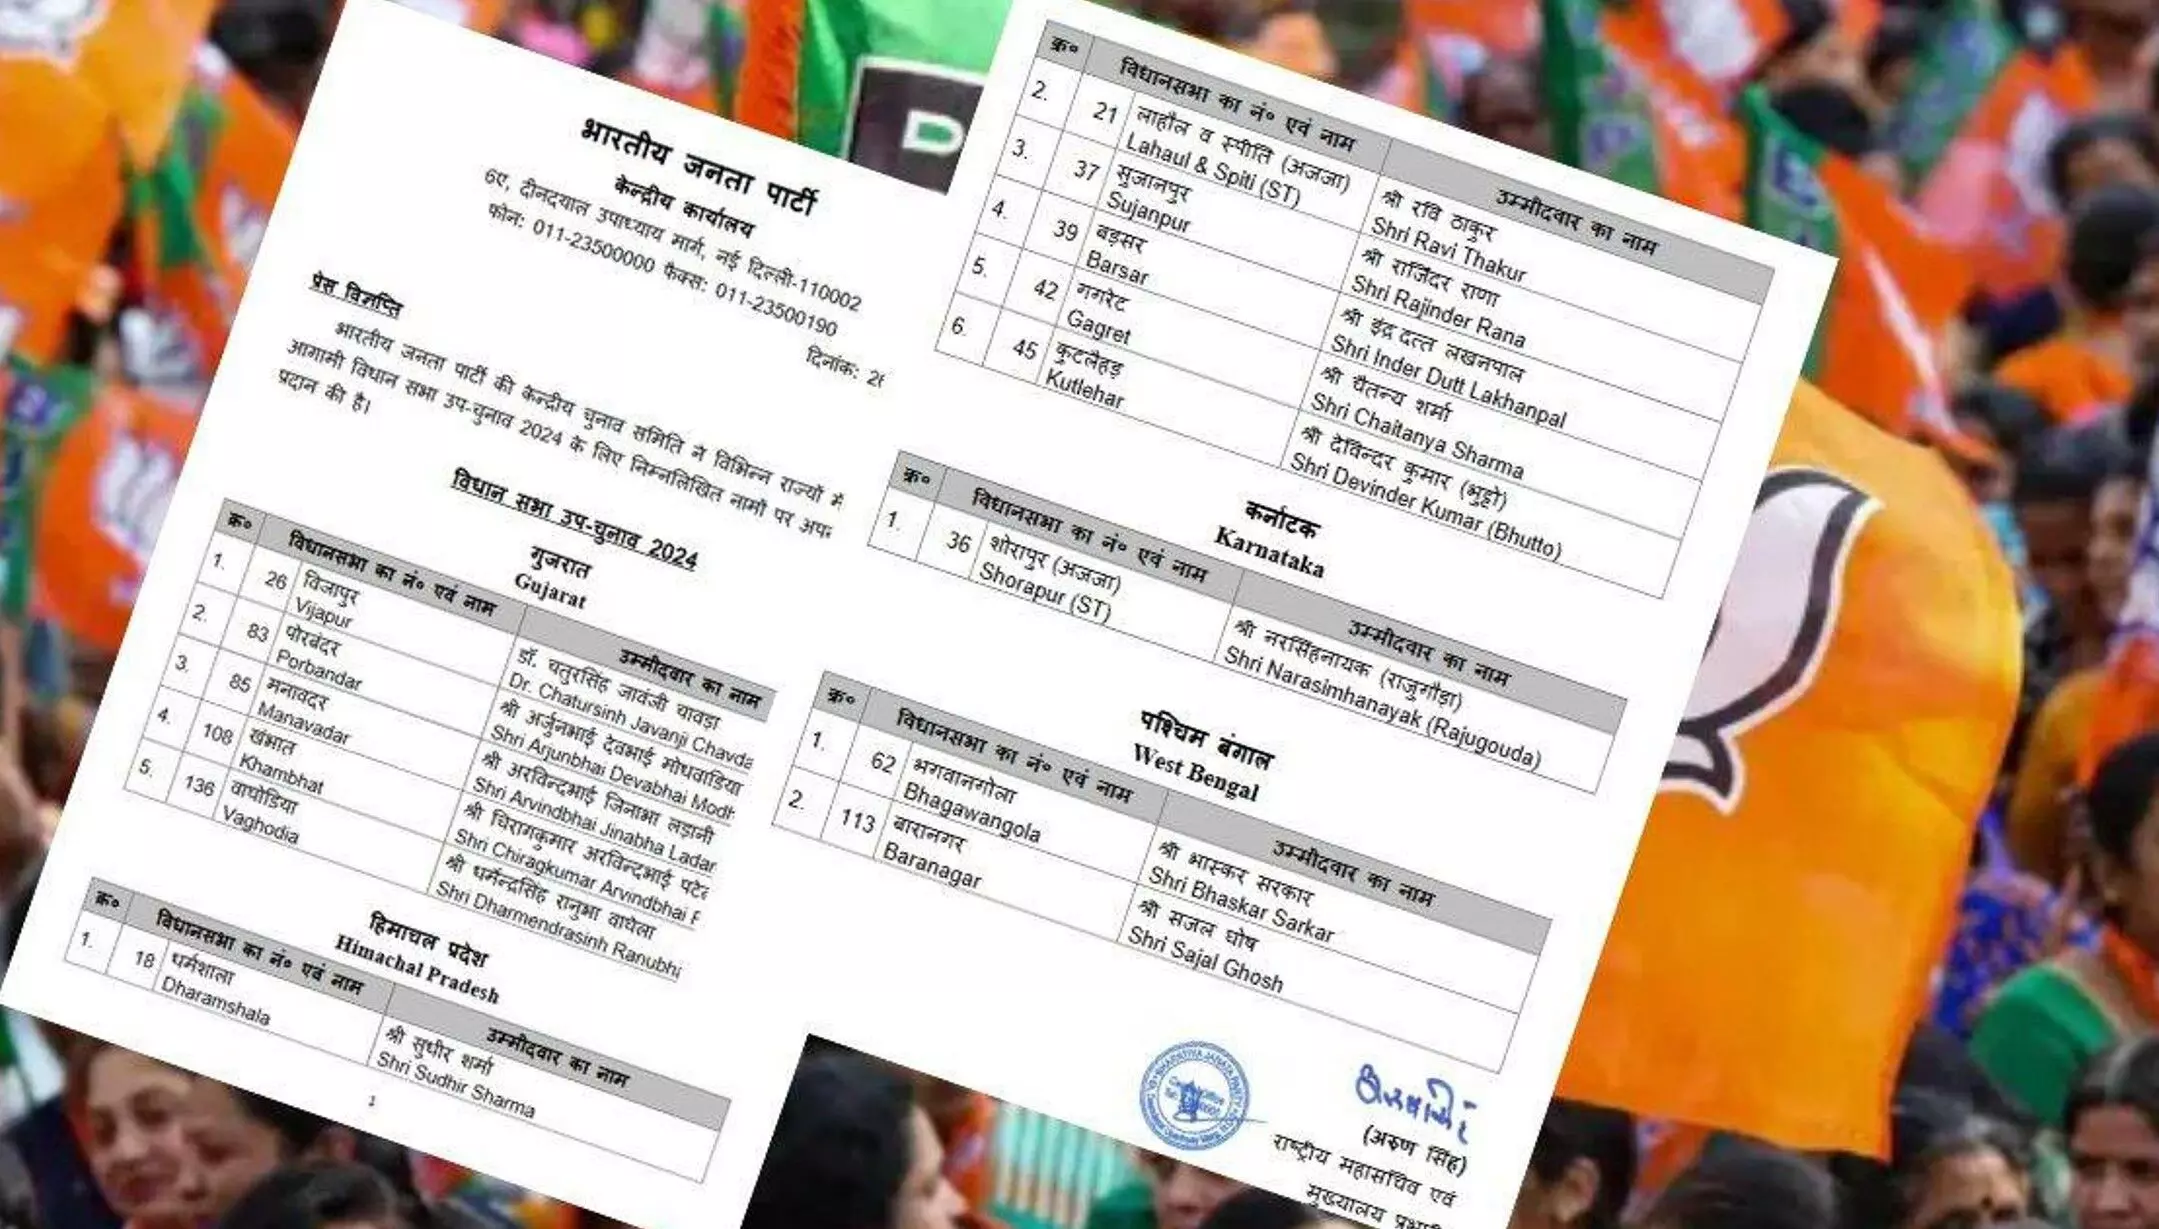 BJP Candidates List: विधानसभा उपचुनावों के लिए BJP उम्मीदवारों की लिस्ट जारी, हिमाचल के सभी बागी कांग्रेस विधायकों को मिला टिकट